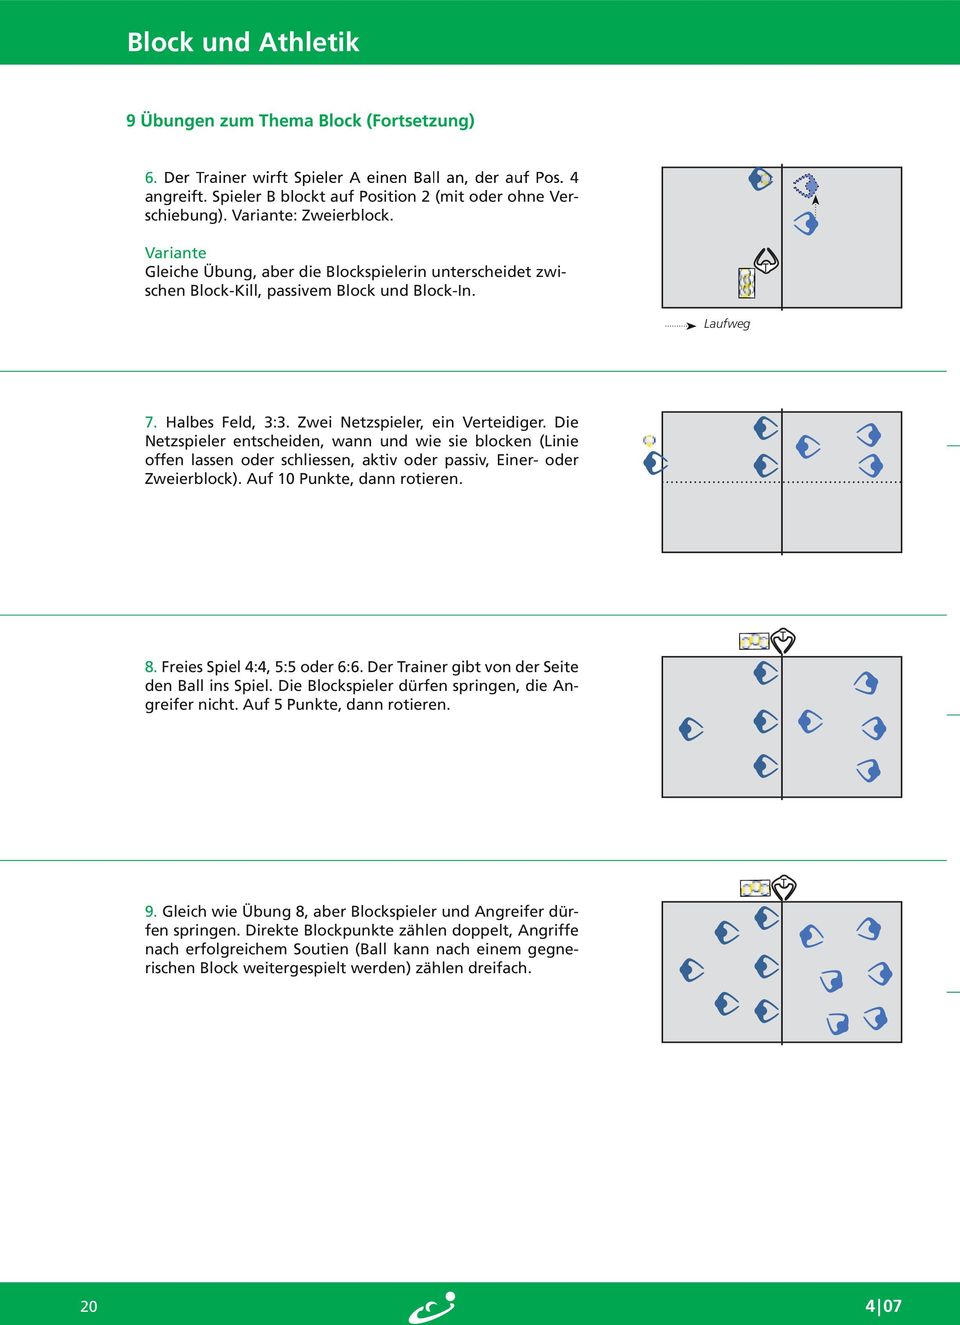 Die Netzspieler entscheiden, wann und wie sie blocken (Linie offen lassen oder schliessen, aktiv oder passiv, Einer- oder Zweierblock). Auf 10 Punkte, dann rotieren. 8. Freies Spiel 4:4, 5:5 oder 6:6.